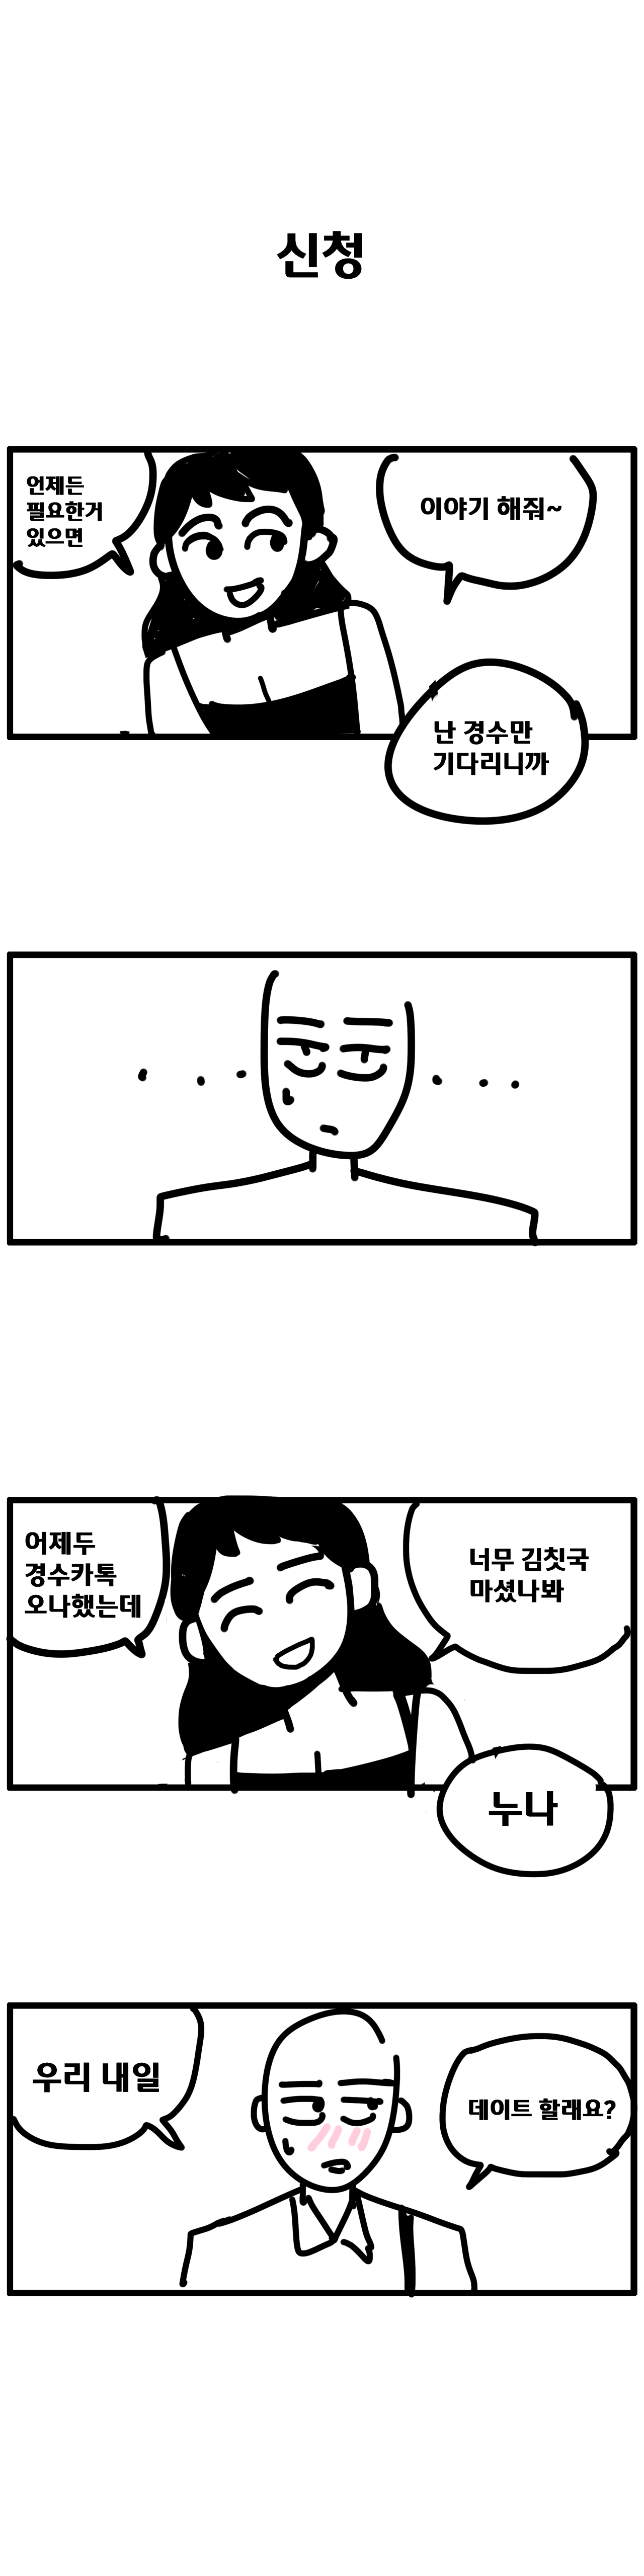 경수 누나 2화_03.png 옆집 누나랑 썸타는 만화. manhwa